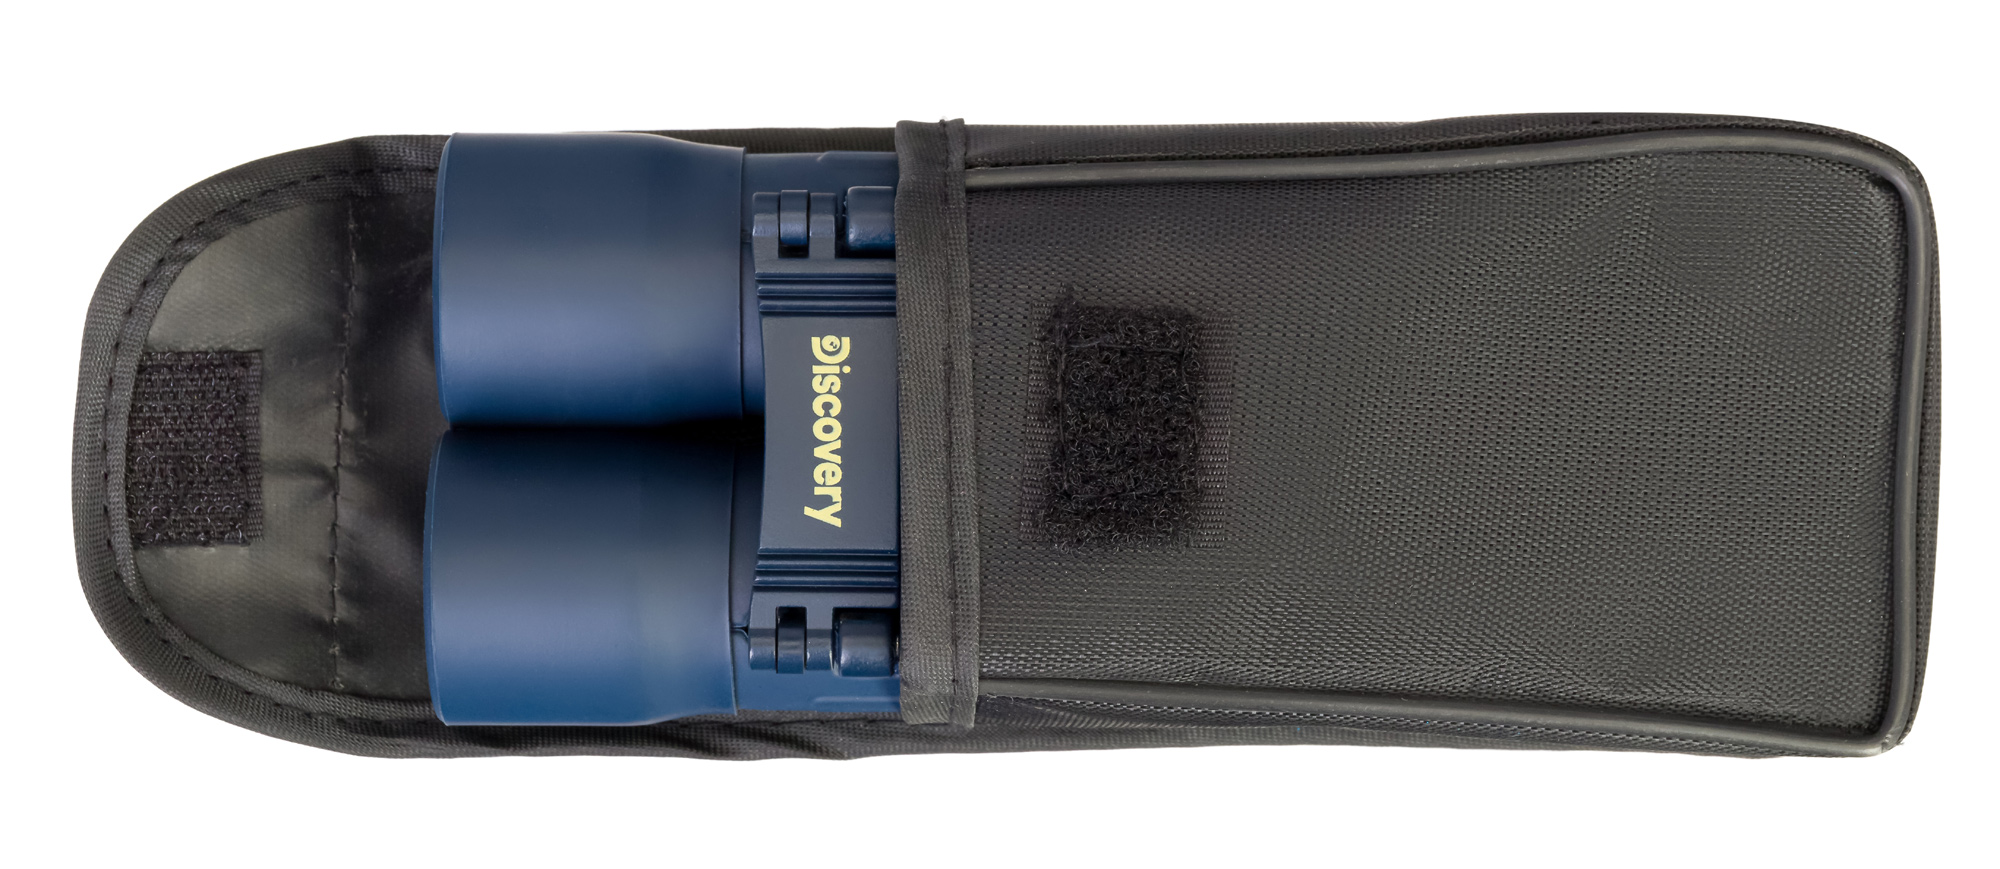 Kompaktný binokulárny ďalekohľad Discovery Basics BB 10x25 je dodávaný s ochranným puzdrom, takže si ho ľahko môžete zobrať so sebou na dlhé výlety, odpočinkové prechádzky či na dobrodružné výpravy a expedície.